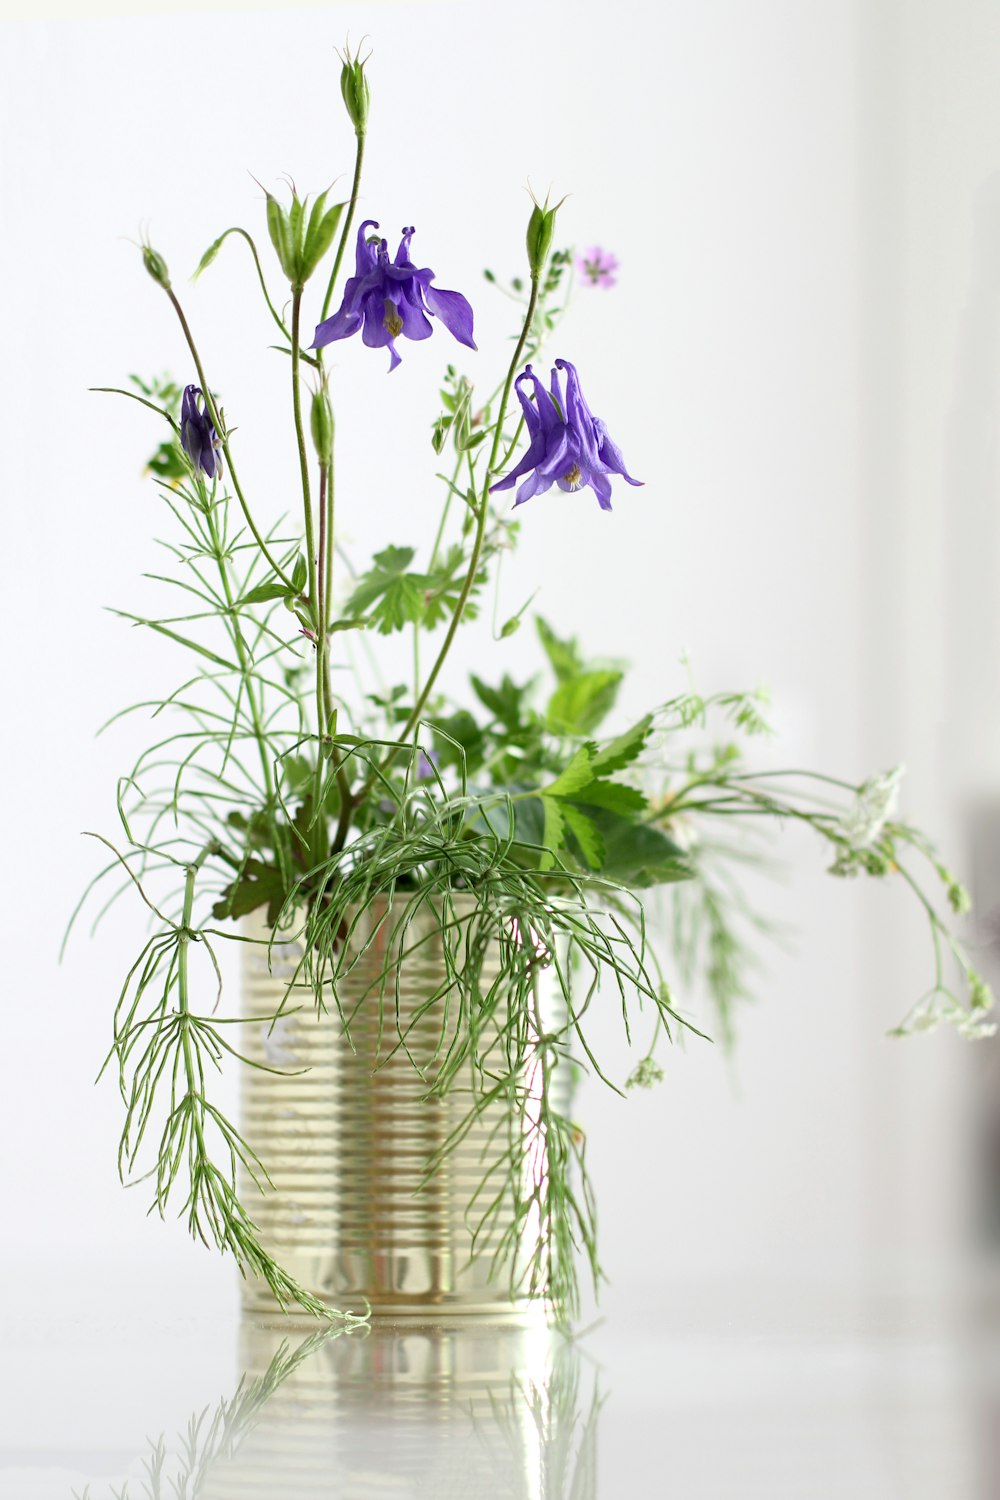 fiori viola in vaso d'argento